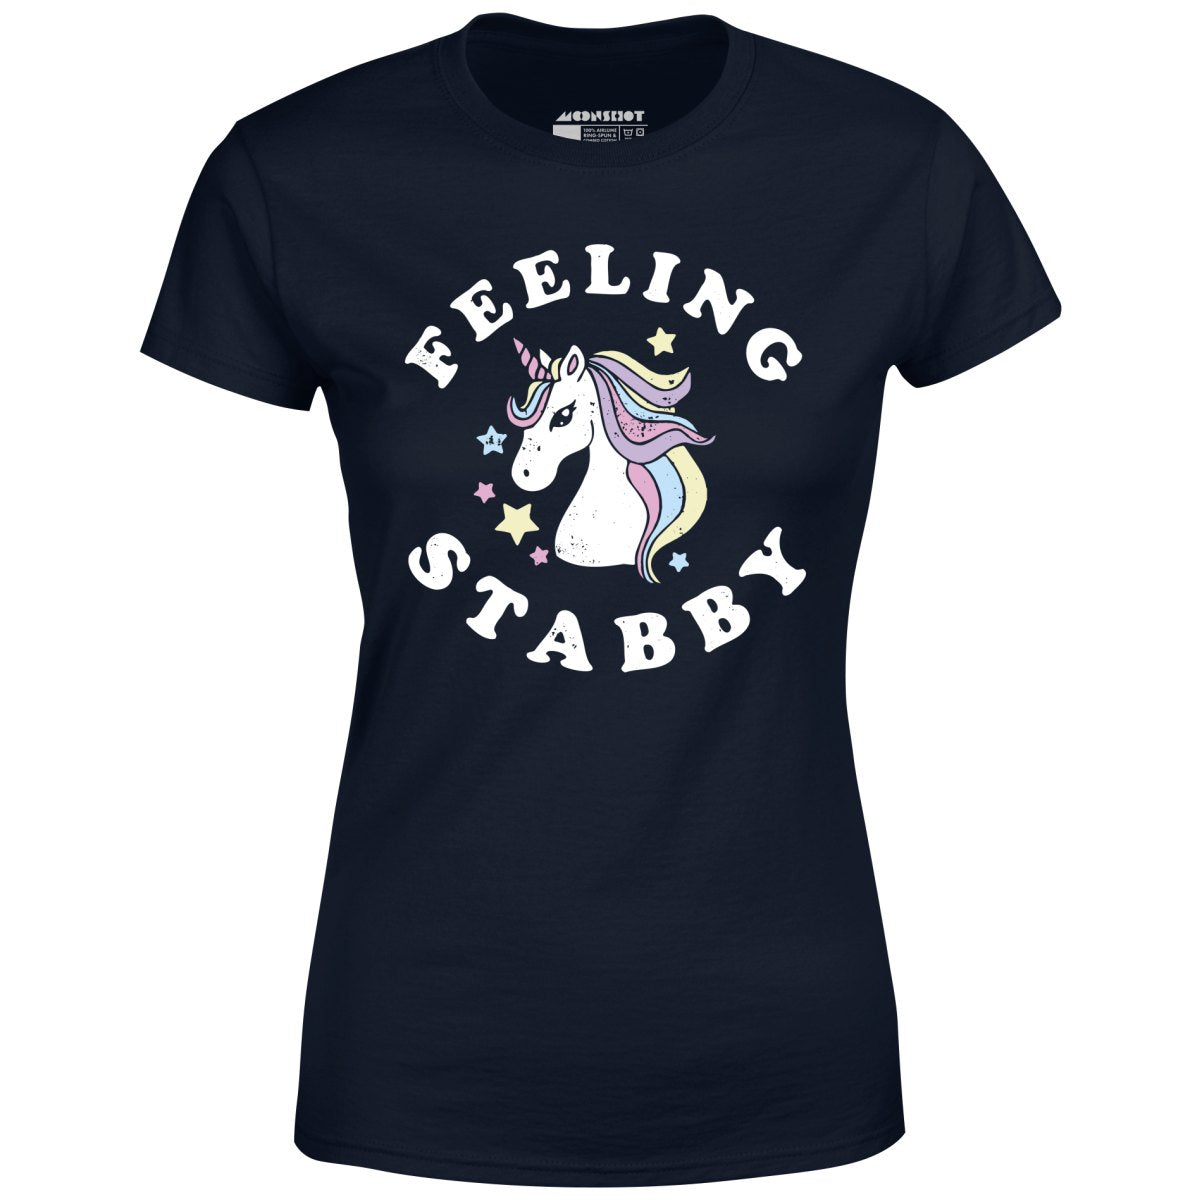 Feeling Stabby - Women's T-Shirt